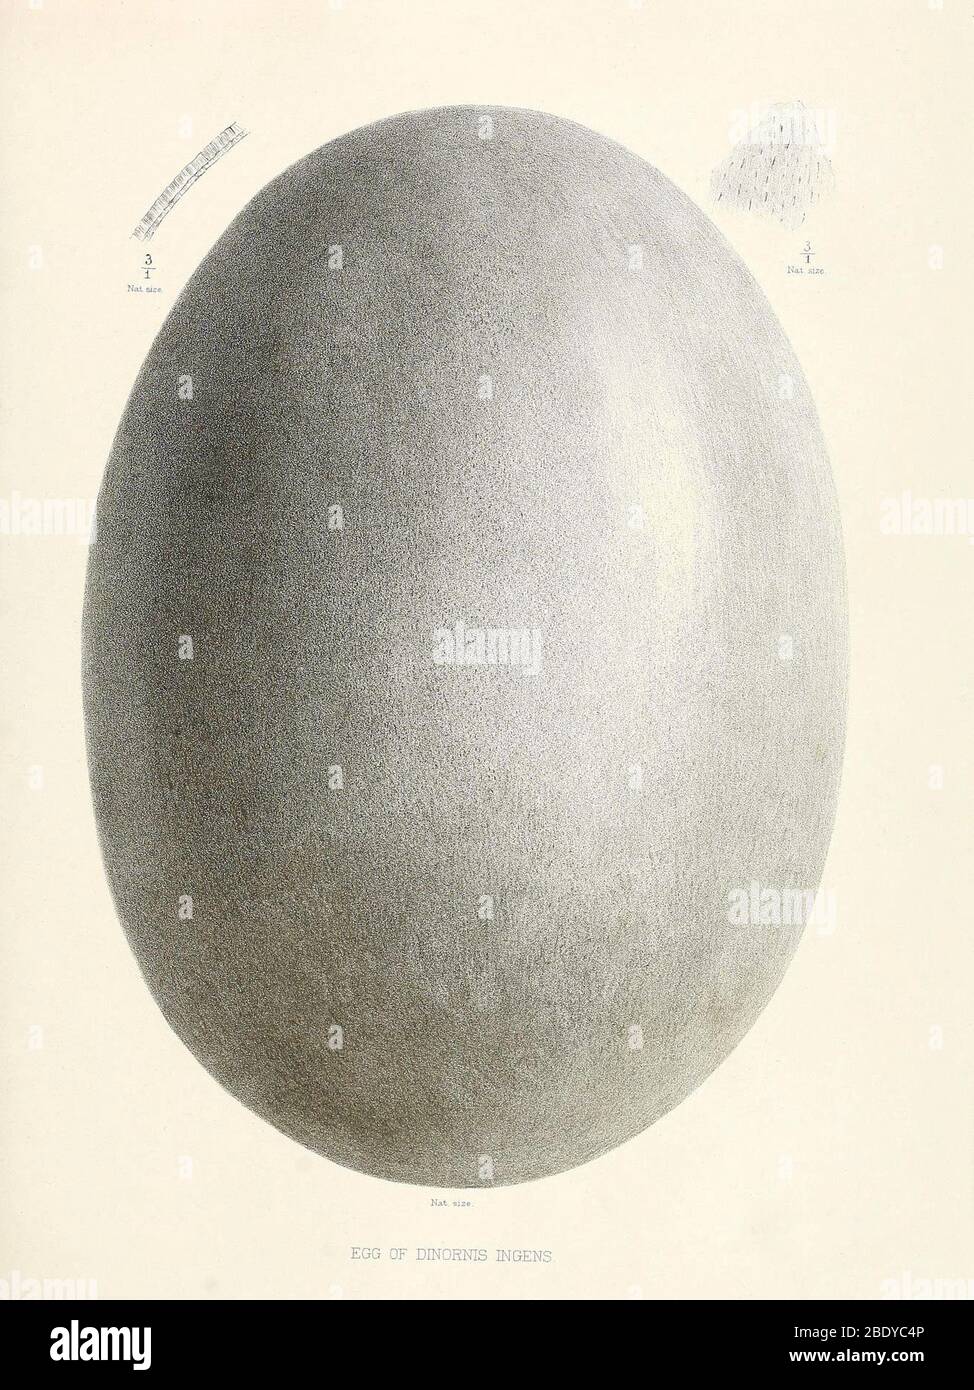 Egg of Dinornis, Giant Moa, Cenozoic Bird Stock Photo